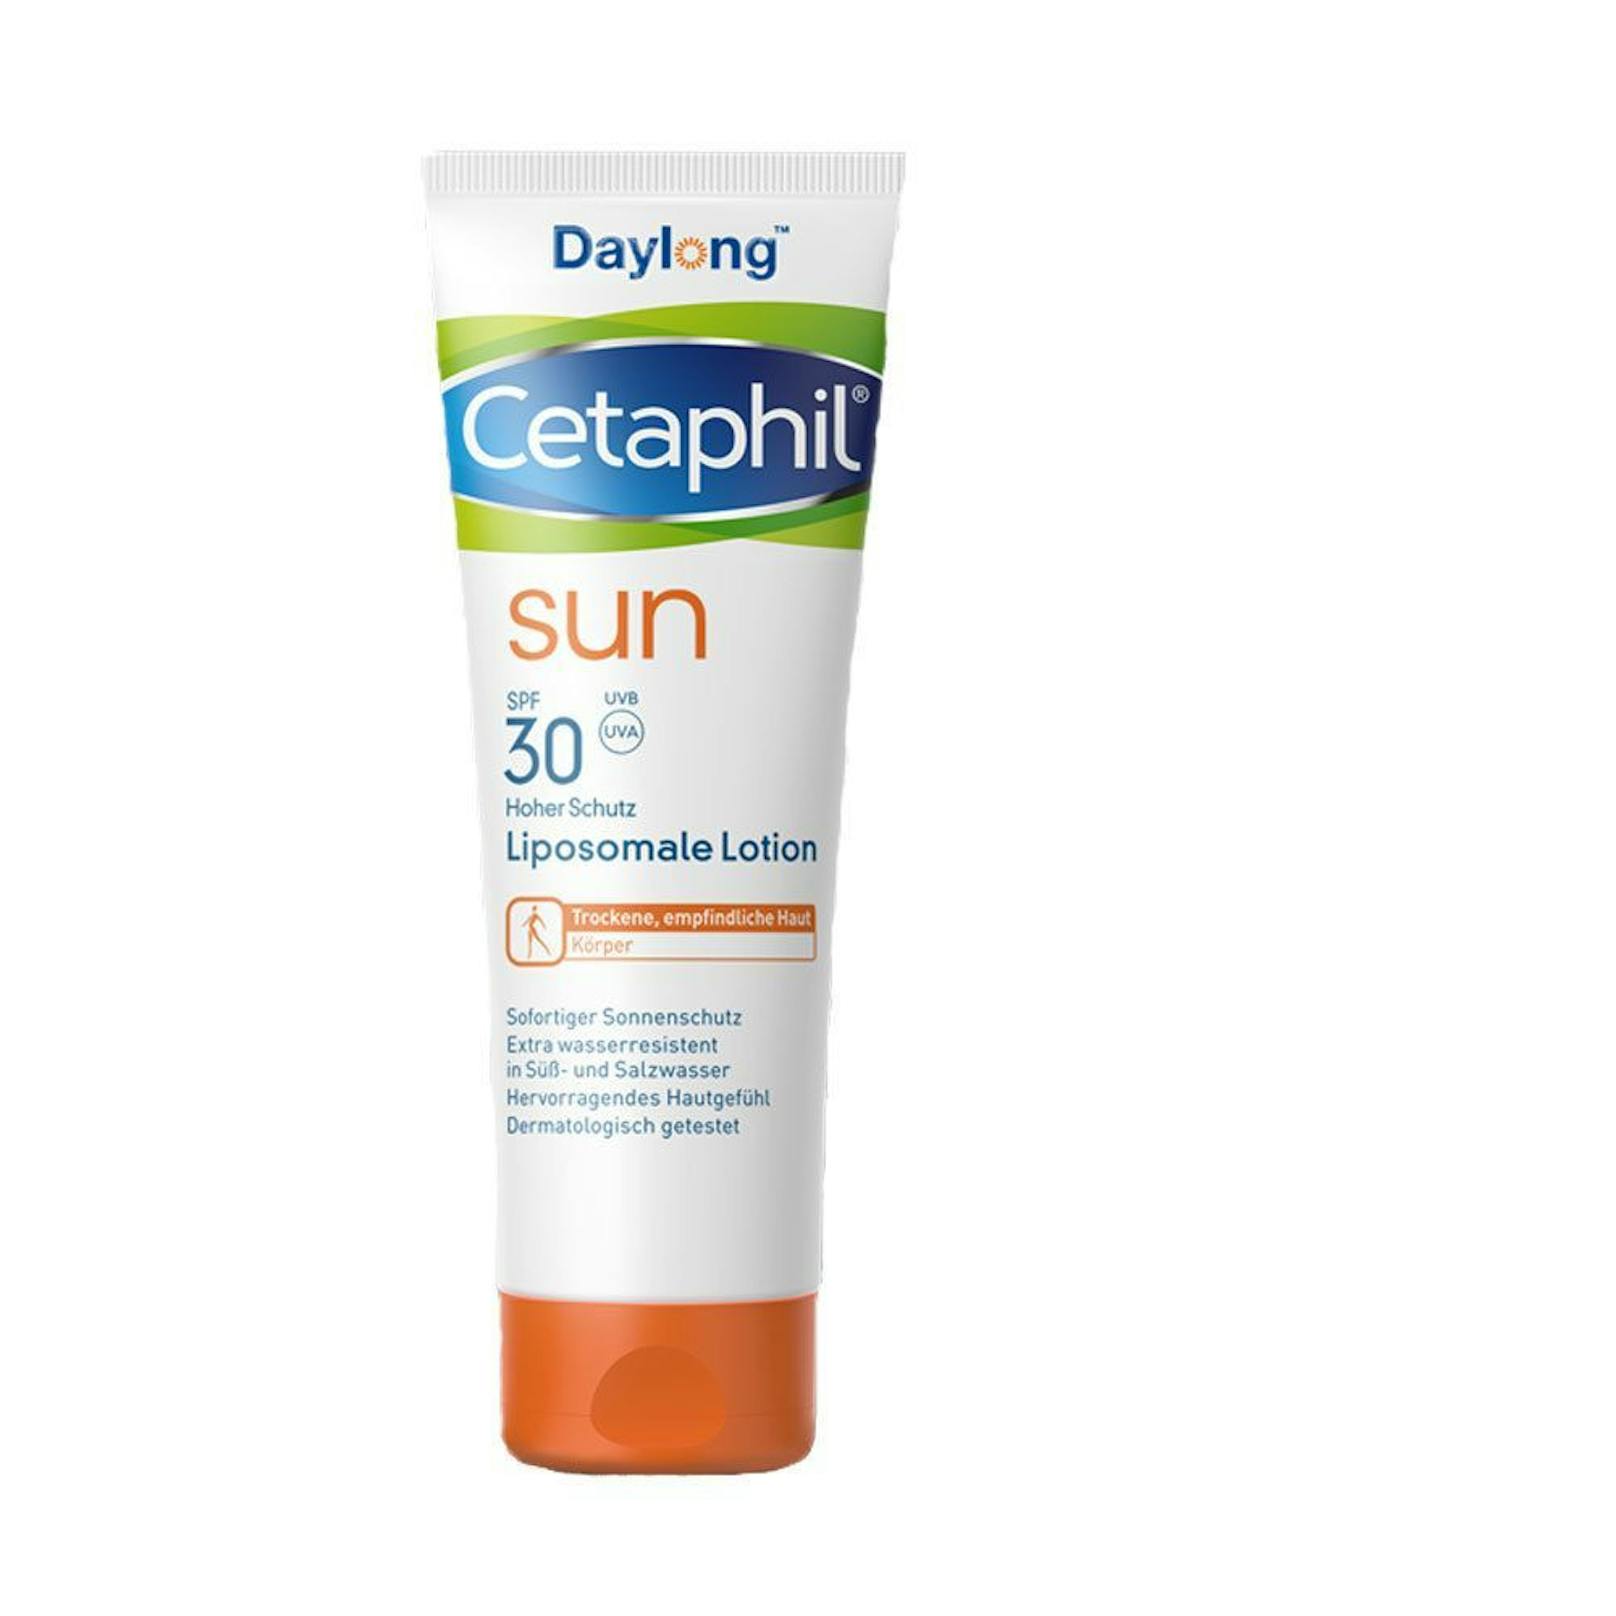 In der Sonnenlotion "Cetaphil Sun Daylong Liposomale SPF 30" wurde der UV-Filter "Ethylhexyl Methoxy Cinnamat" festgestellt. Er wird von Öko-Test wegen möglicher hormoneller Wirkung als bedenklich eingestuft.